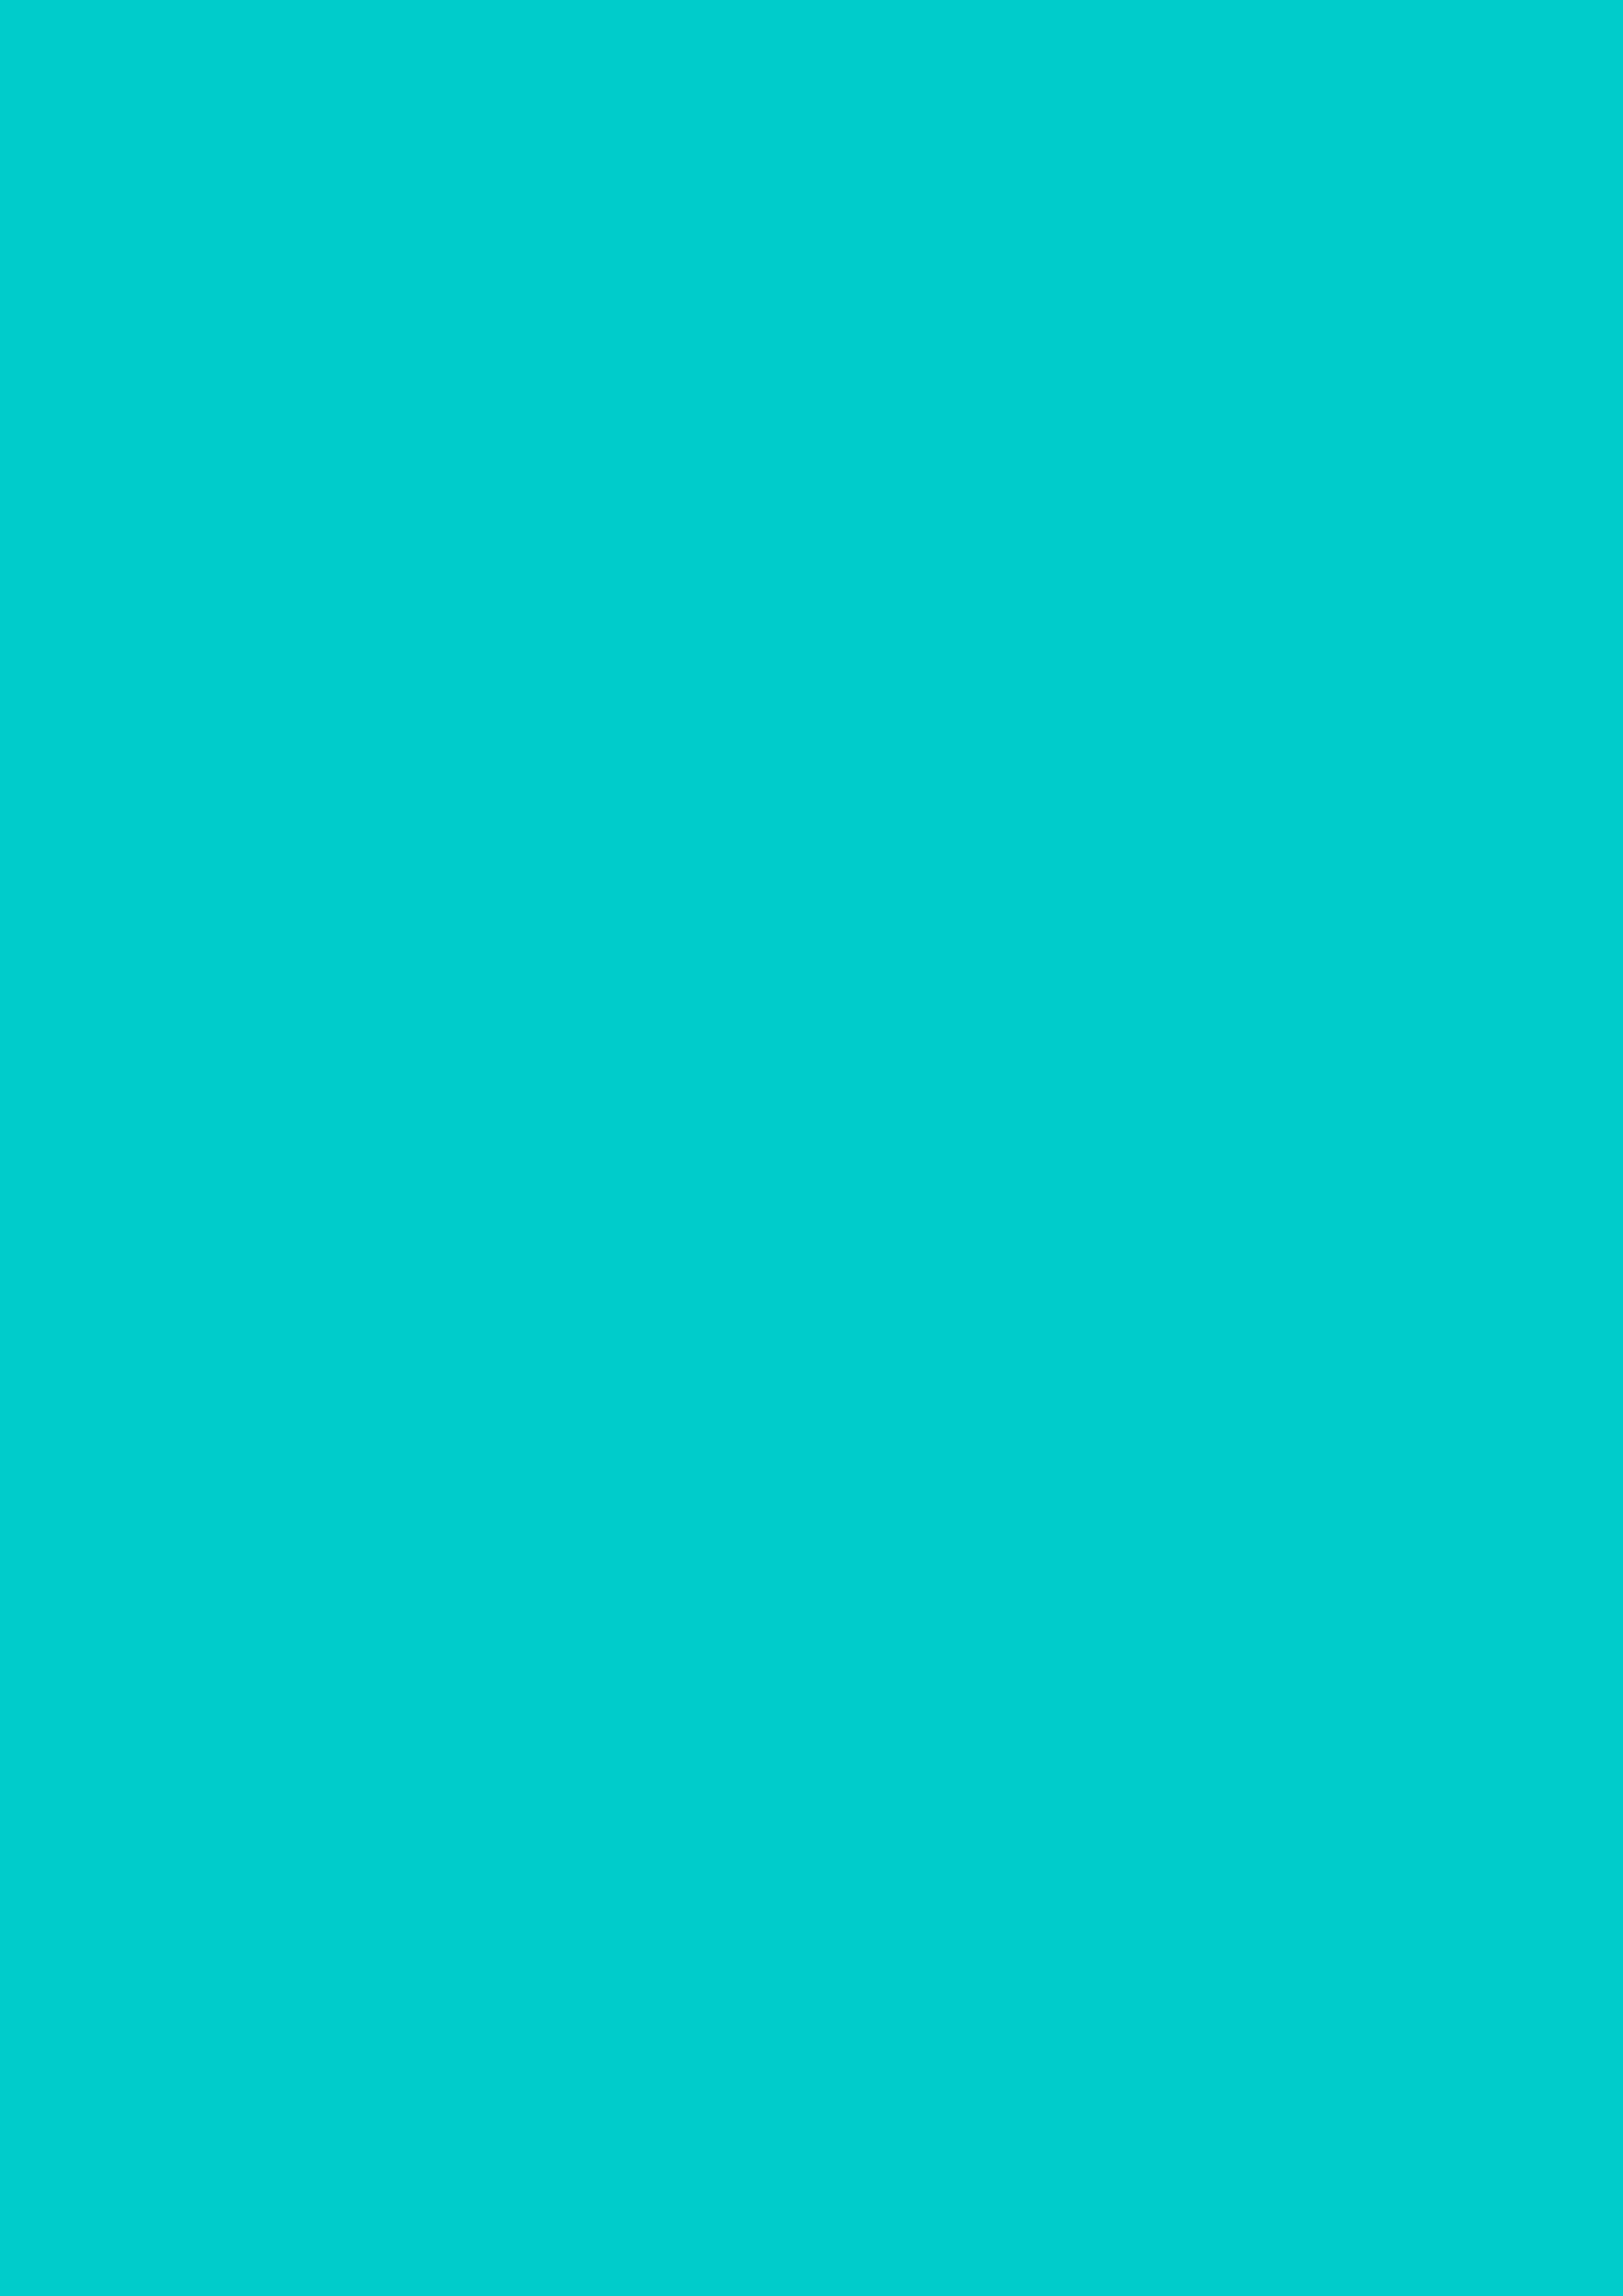 2480x3508 Robin Egg Blue Solid Color Background